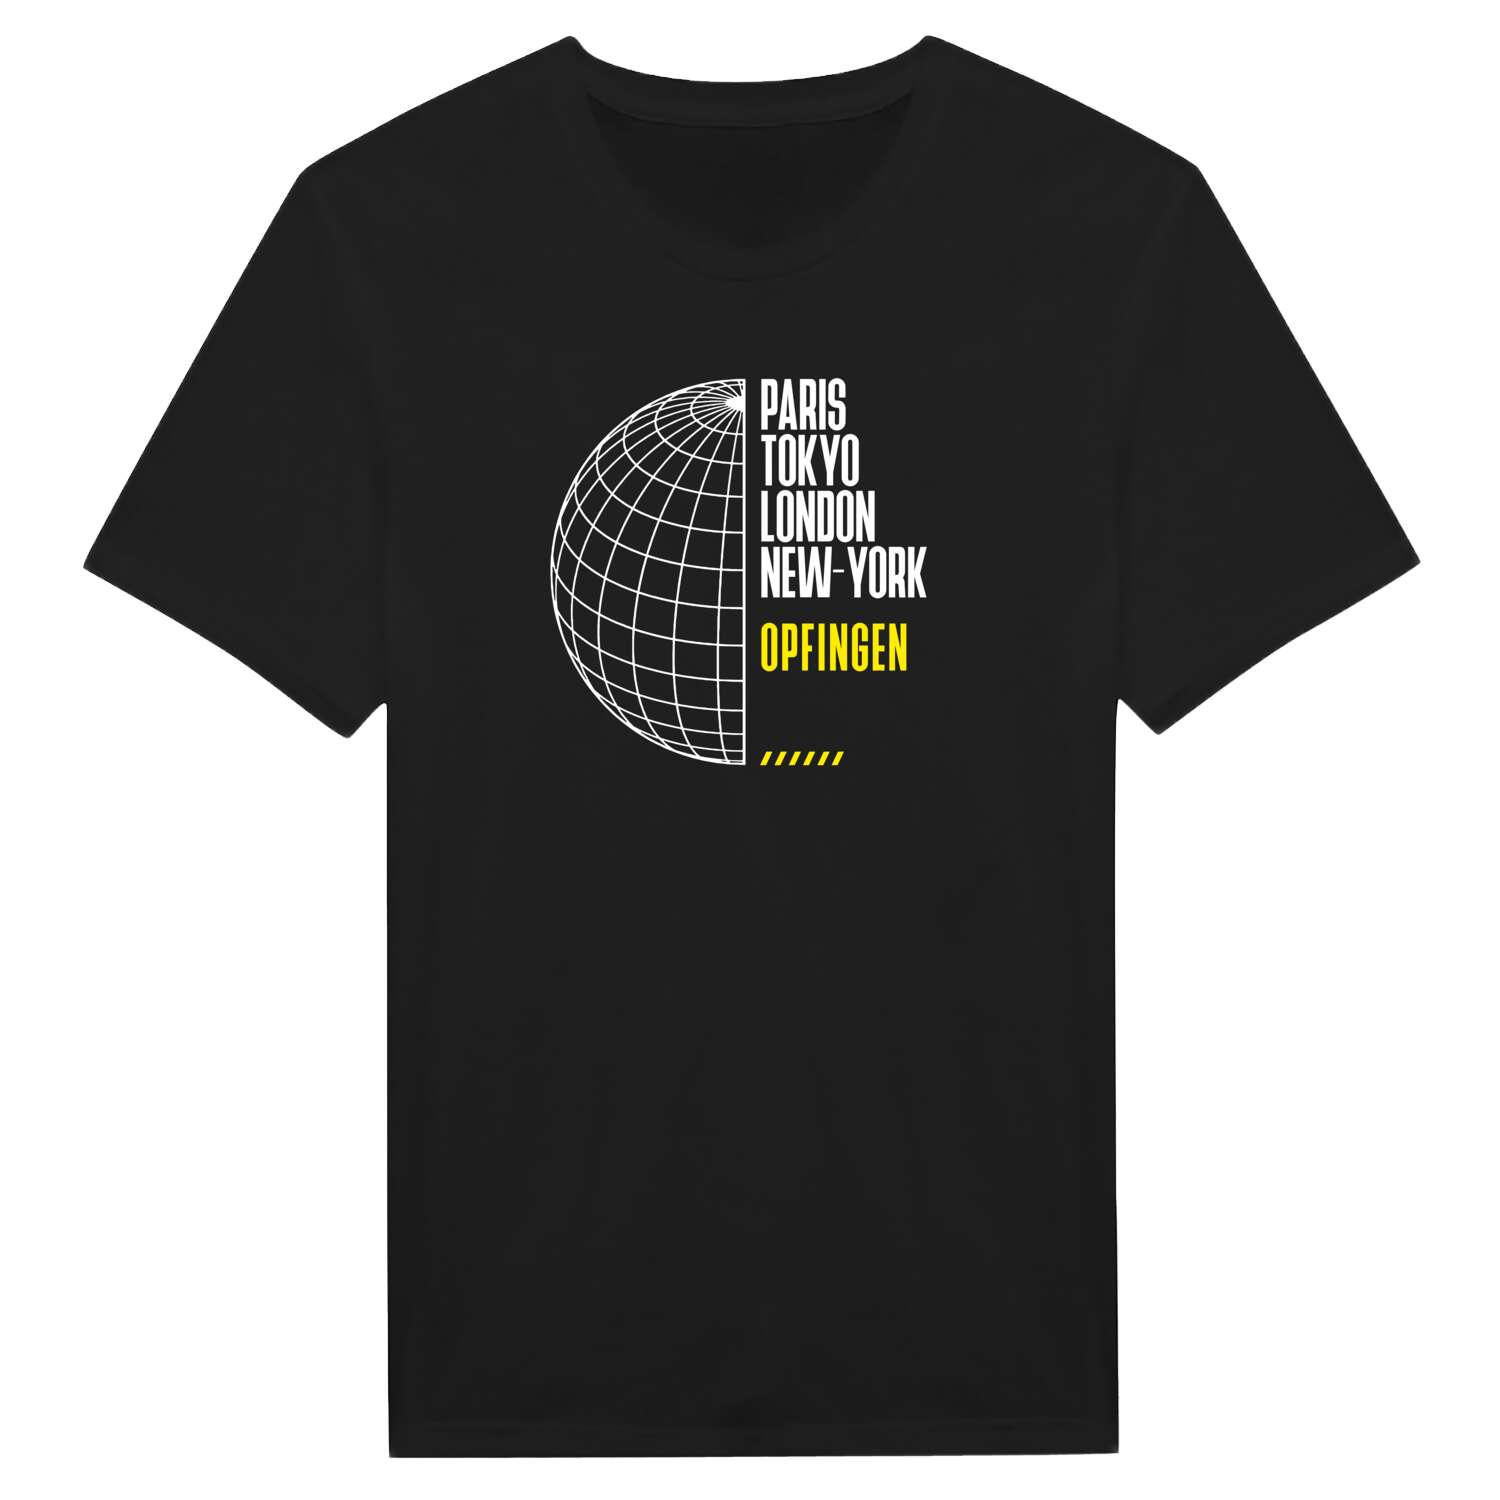 Opfingen T-Shirt »Paris Tokyo London«